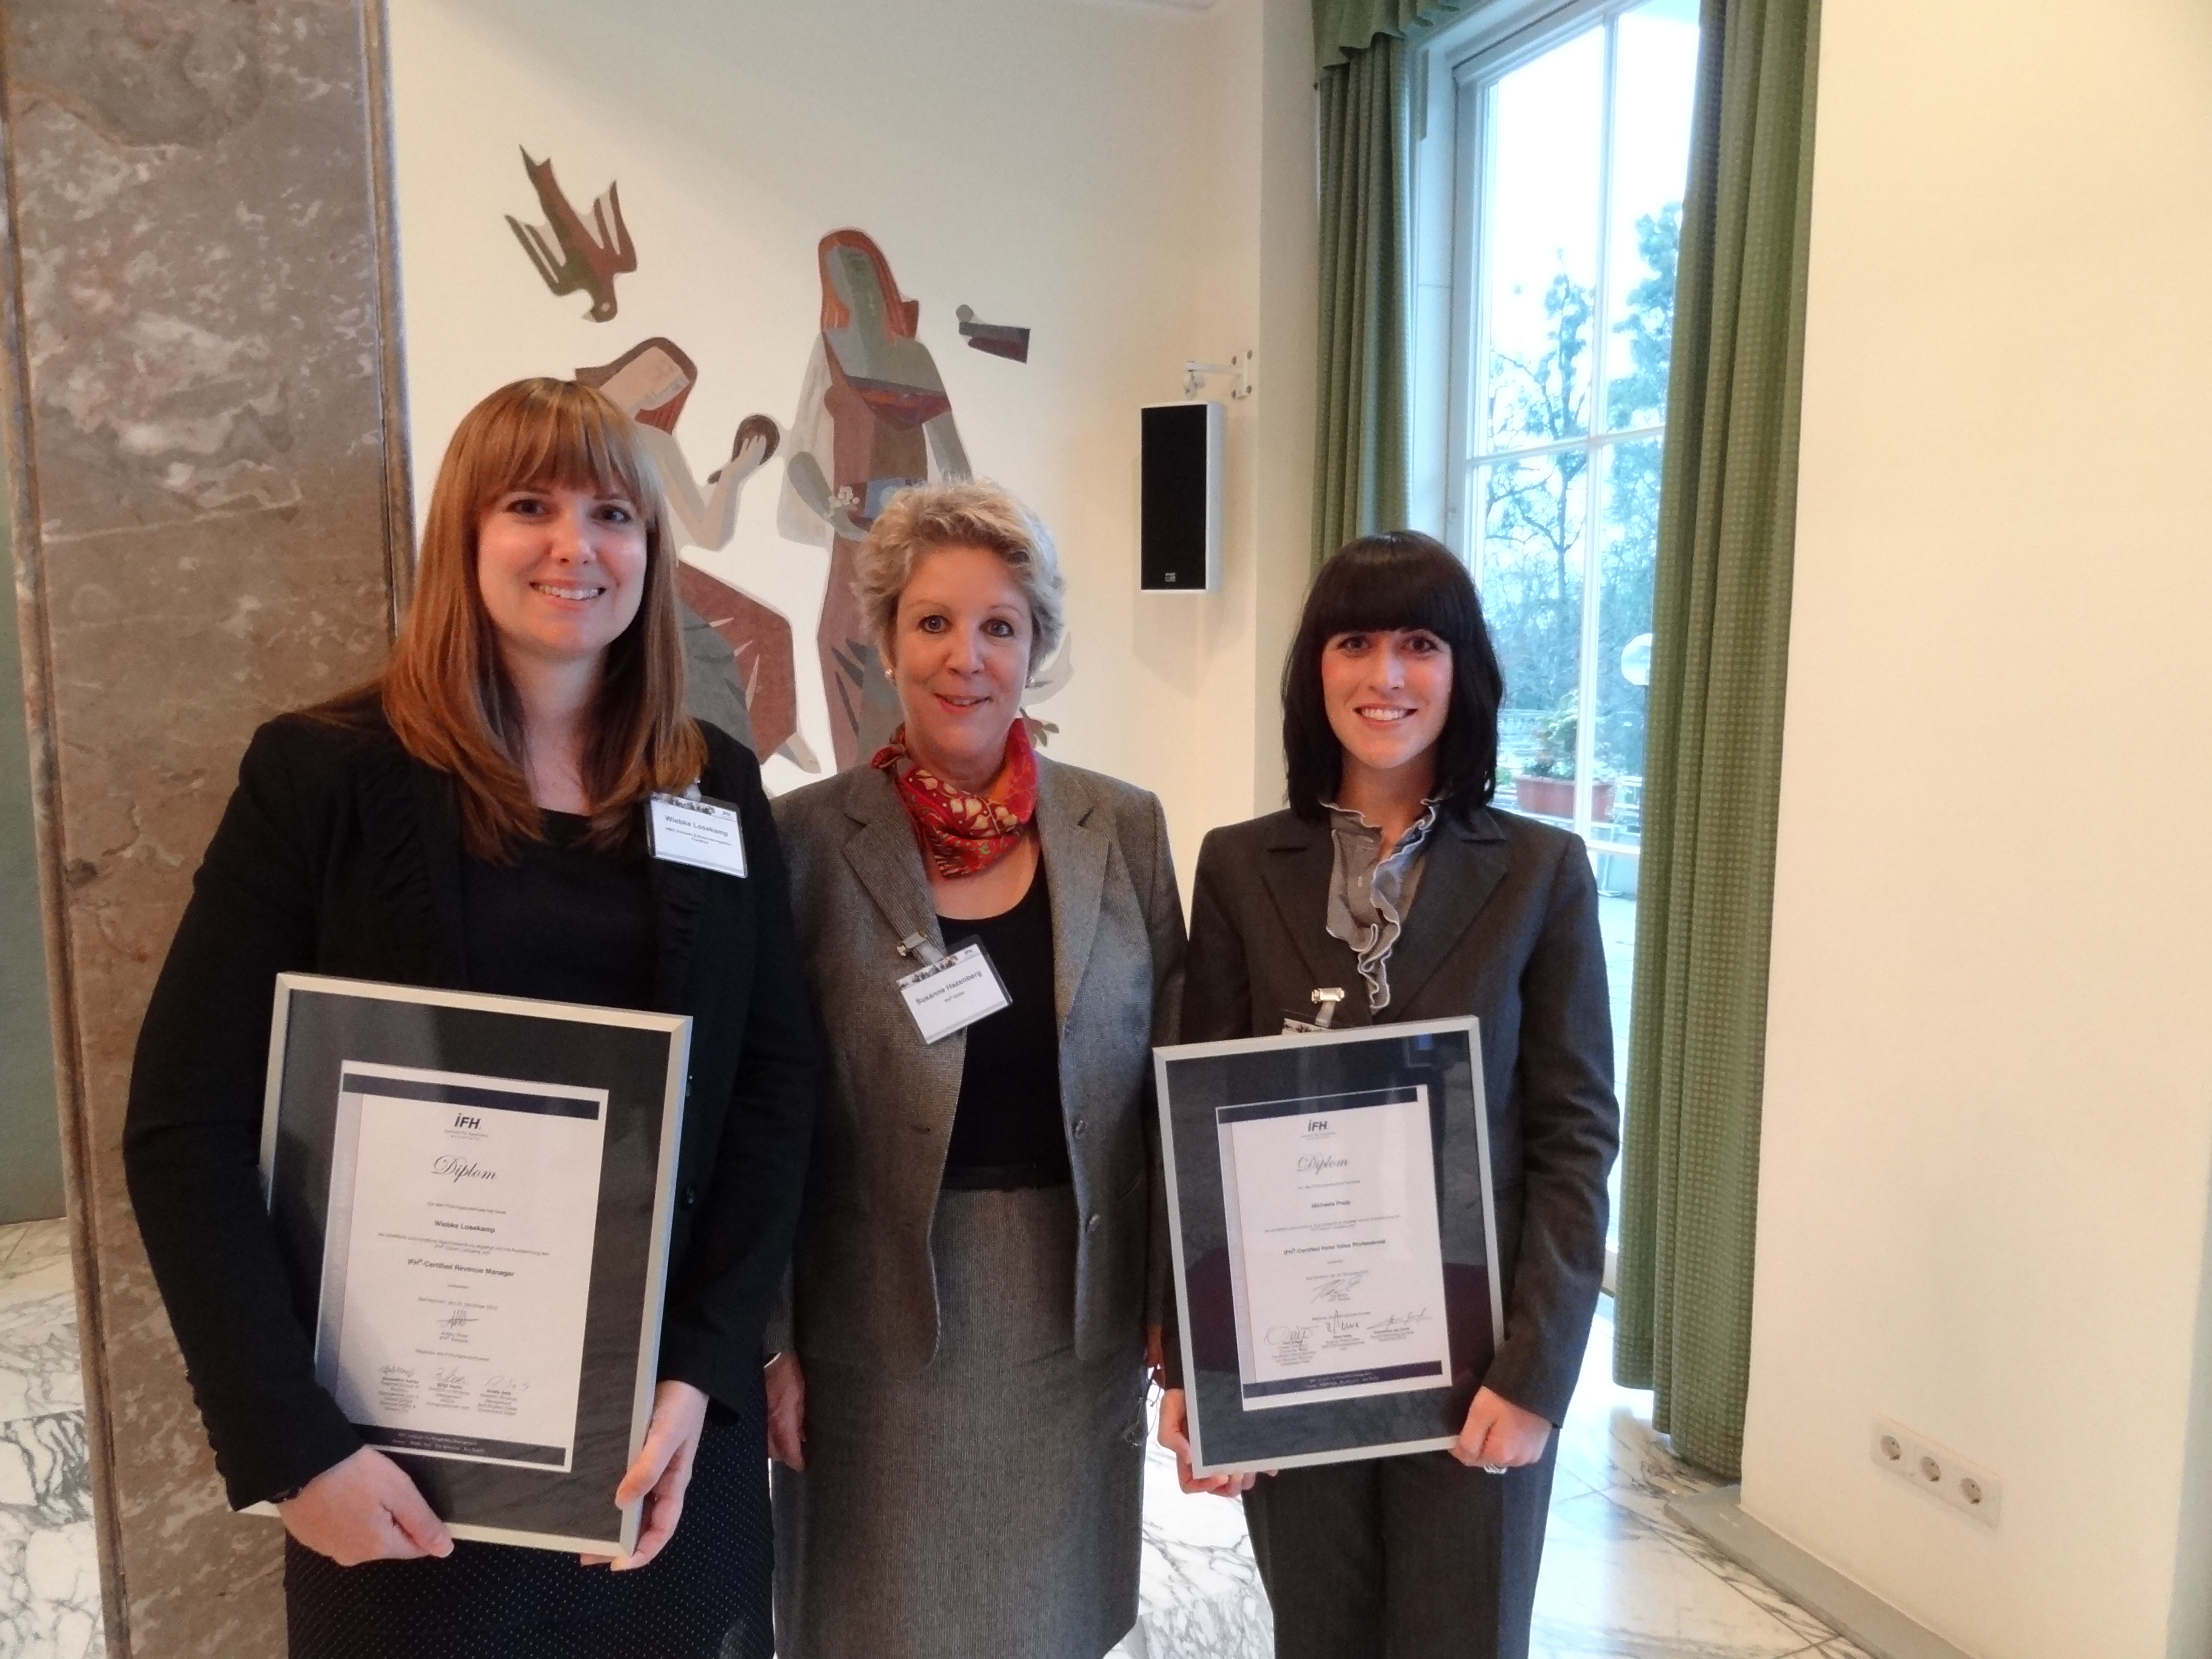 IFH-Diplom mit Auszeichnung: (von links) Michaela Popp (Assistant Sales Manager im Ramada Plaza Basel), Susanne Hazenberg (Geschäftsführerin IFH) und Wiebke Losekamp (stellvertretende Reservierungsleiterin HMG Verkaufs & Reservierungsbüro Frankfurt)